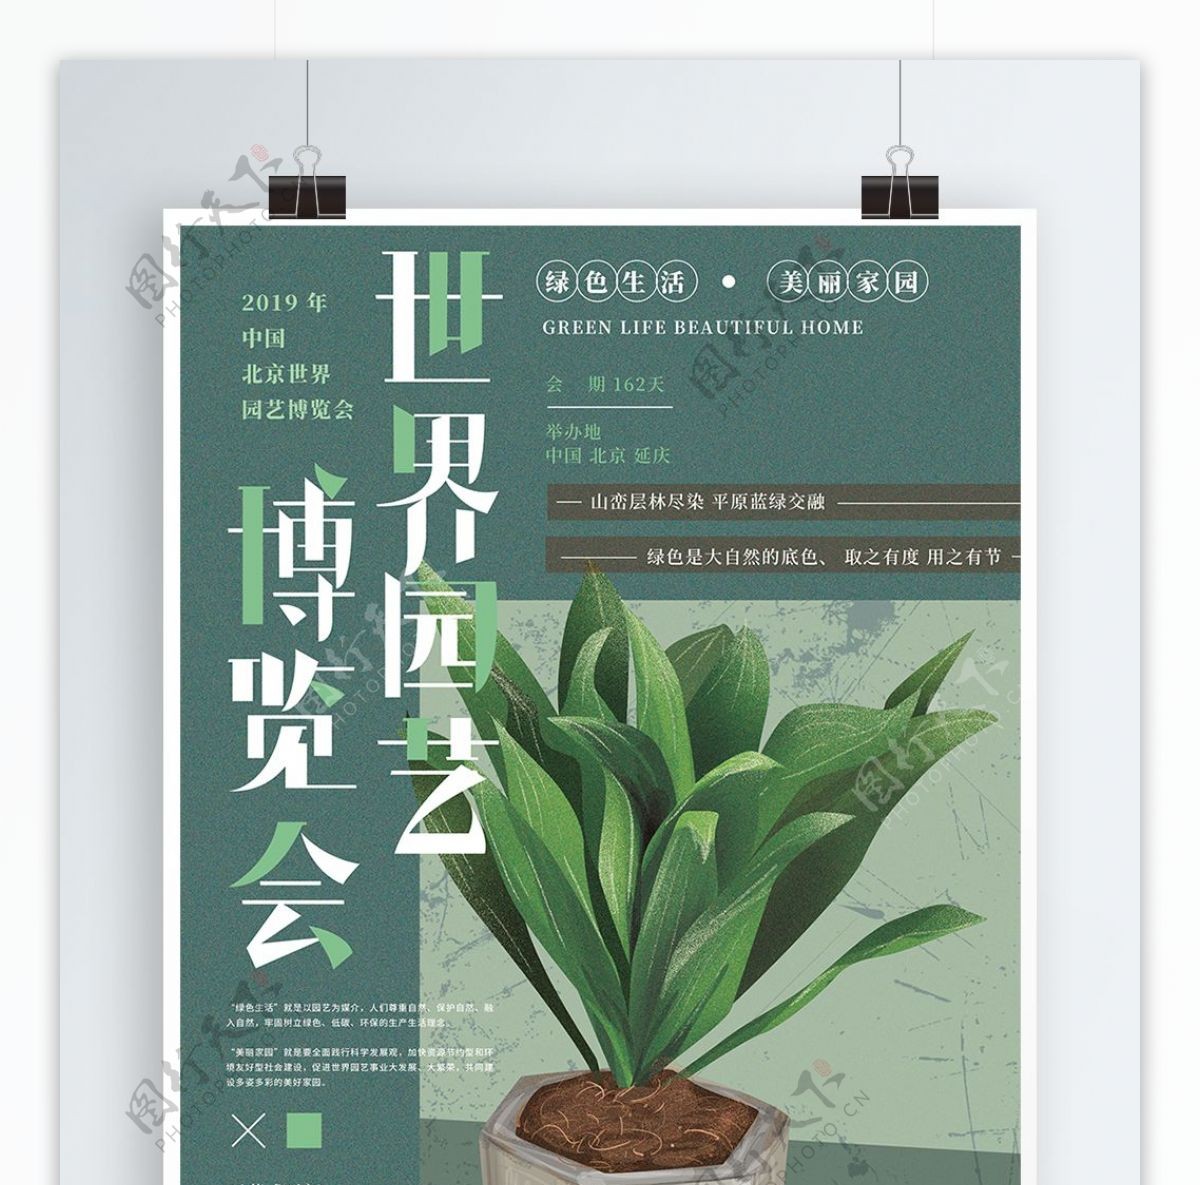 原创手绘北京世界园艺博览会海报